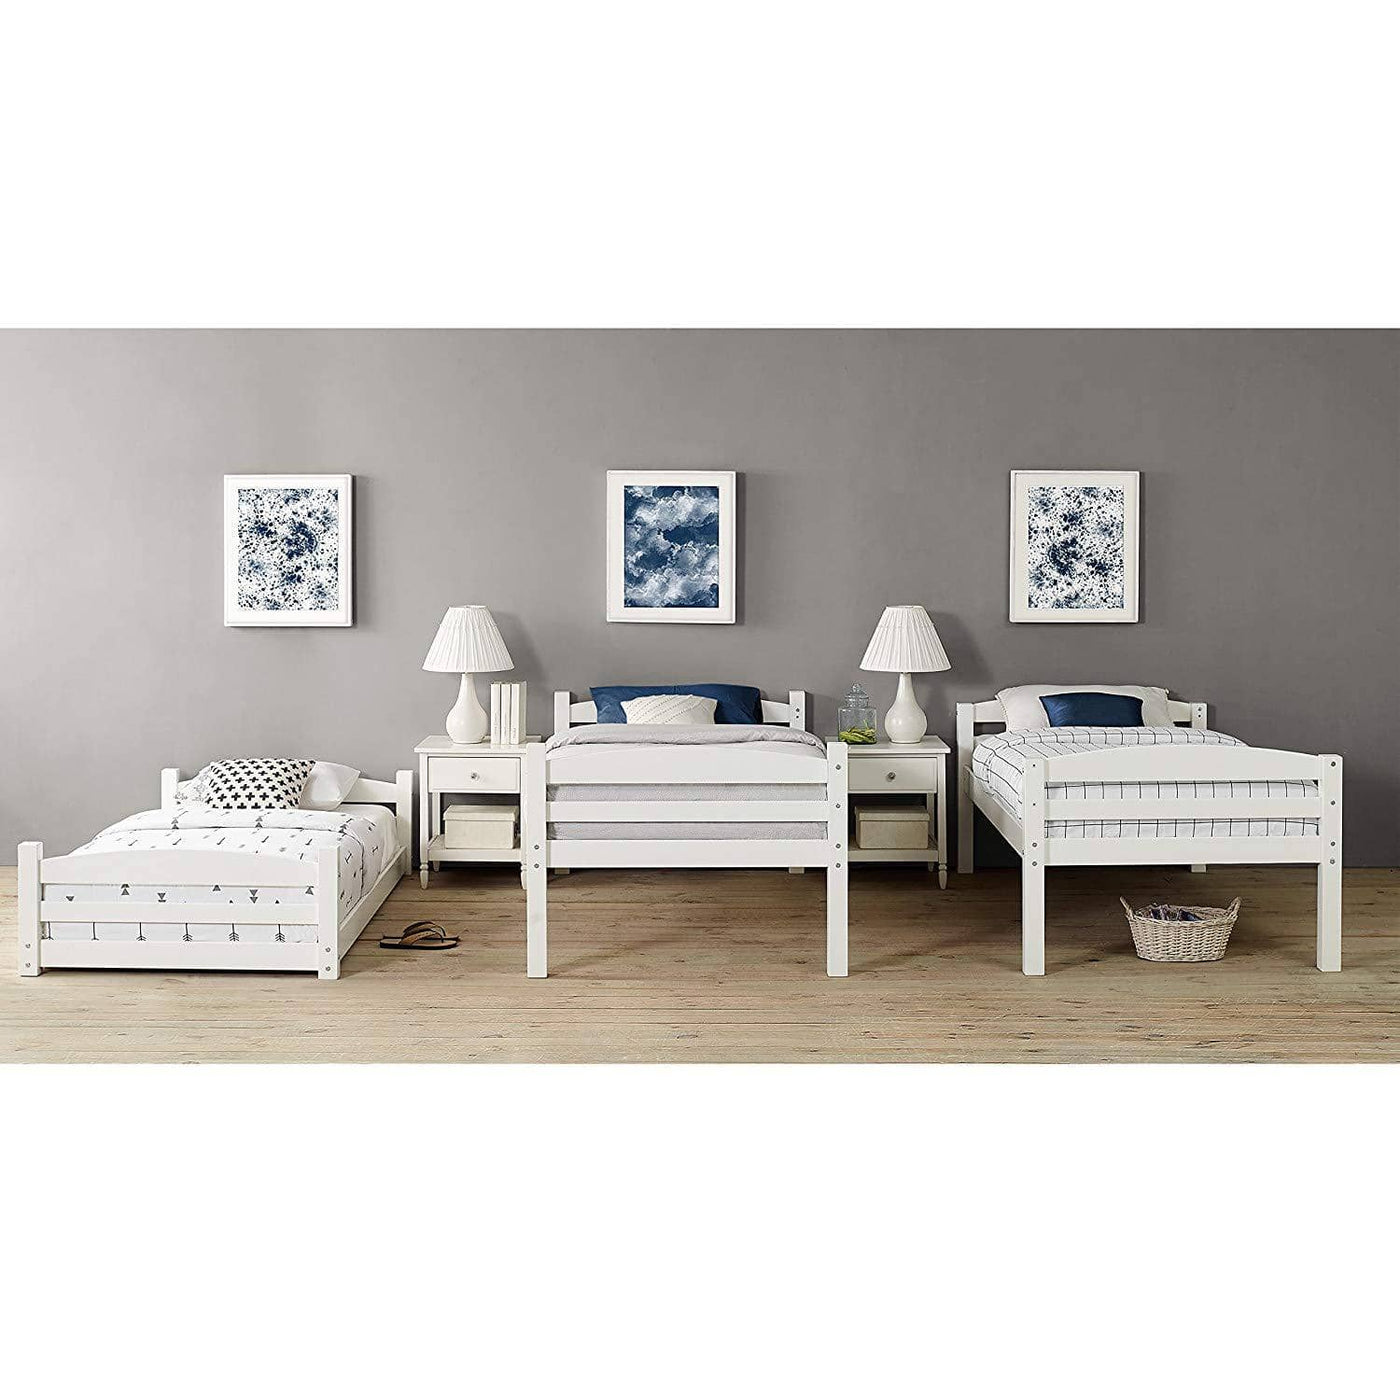 Jaxon Triple Bunk Bed Custom Kids Furniture